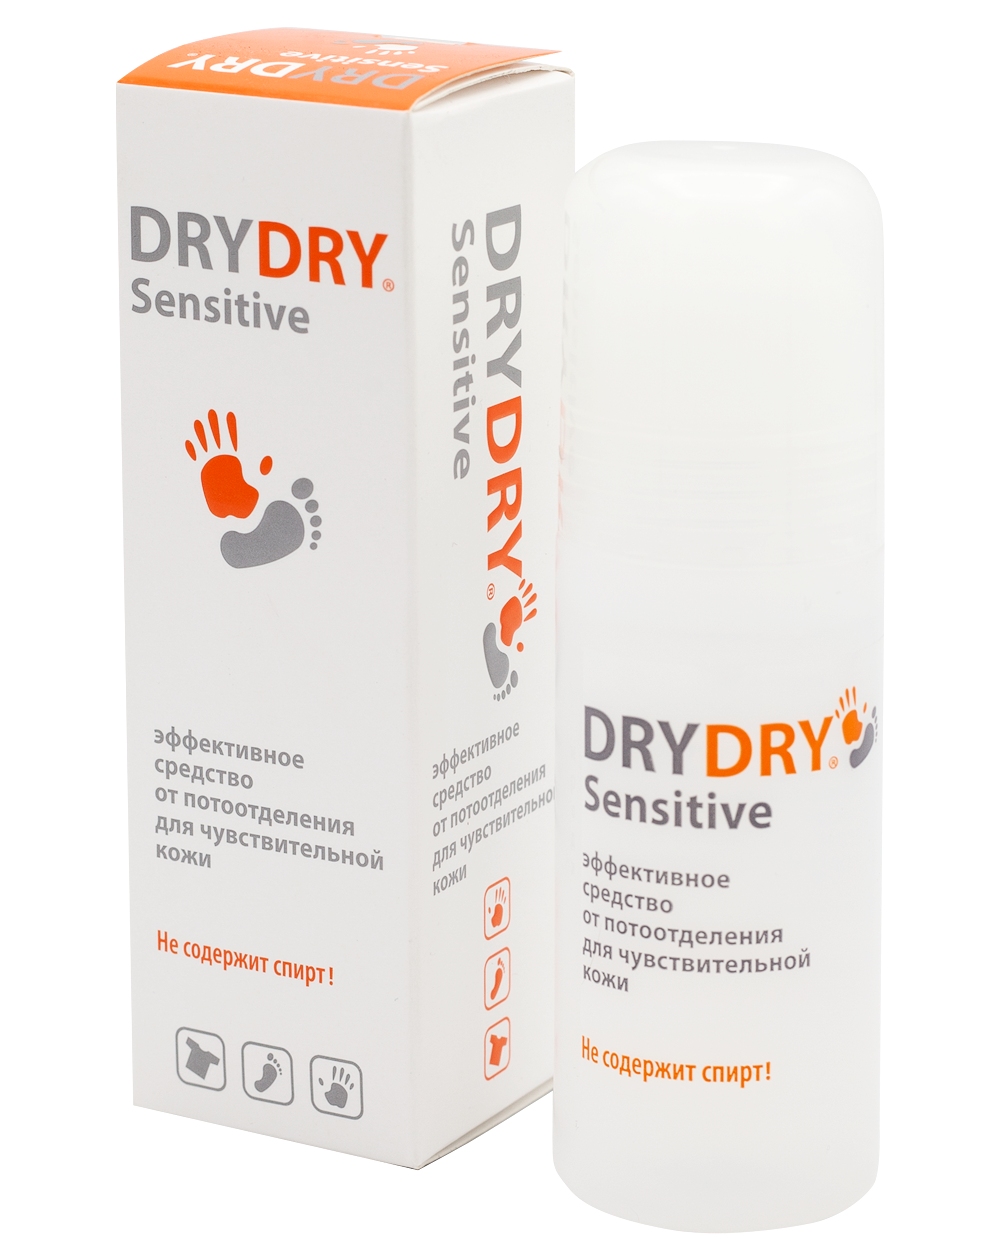 Средство от пота в аптеке. Драй драй Сенситив 50 мл. Dry Dry sensitive дезодорант. Средства драй драй для подмышек. Дезодорант от пота в аптеке Dry Dry.